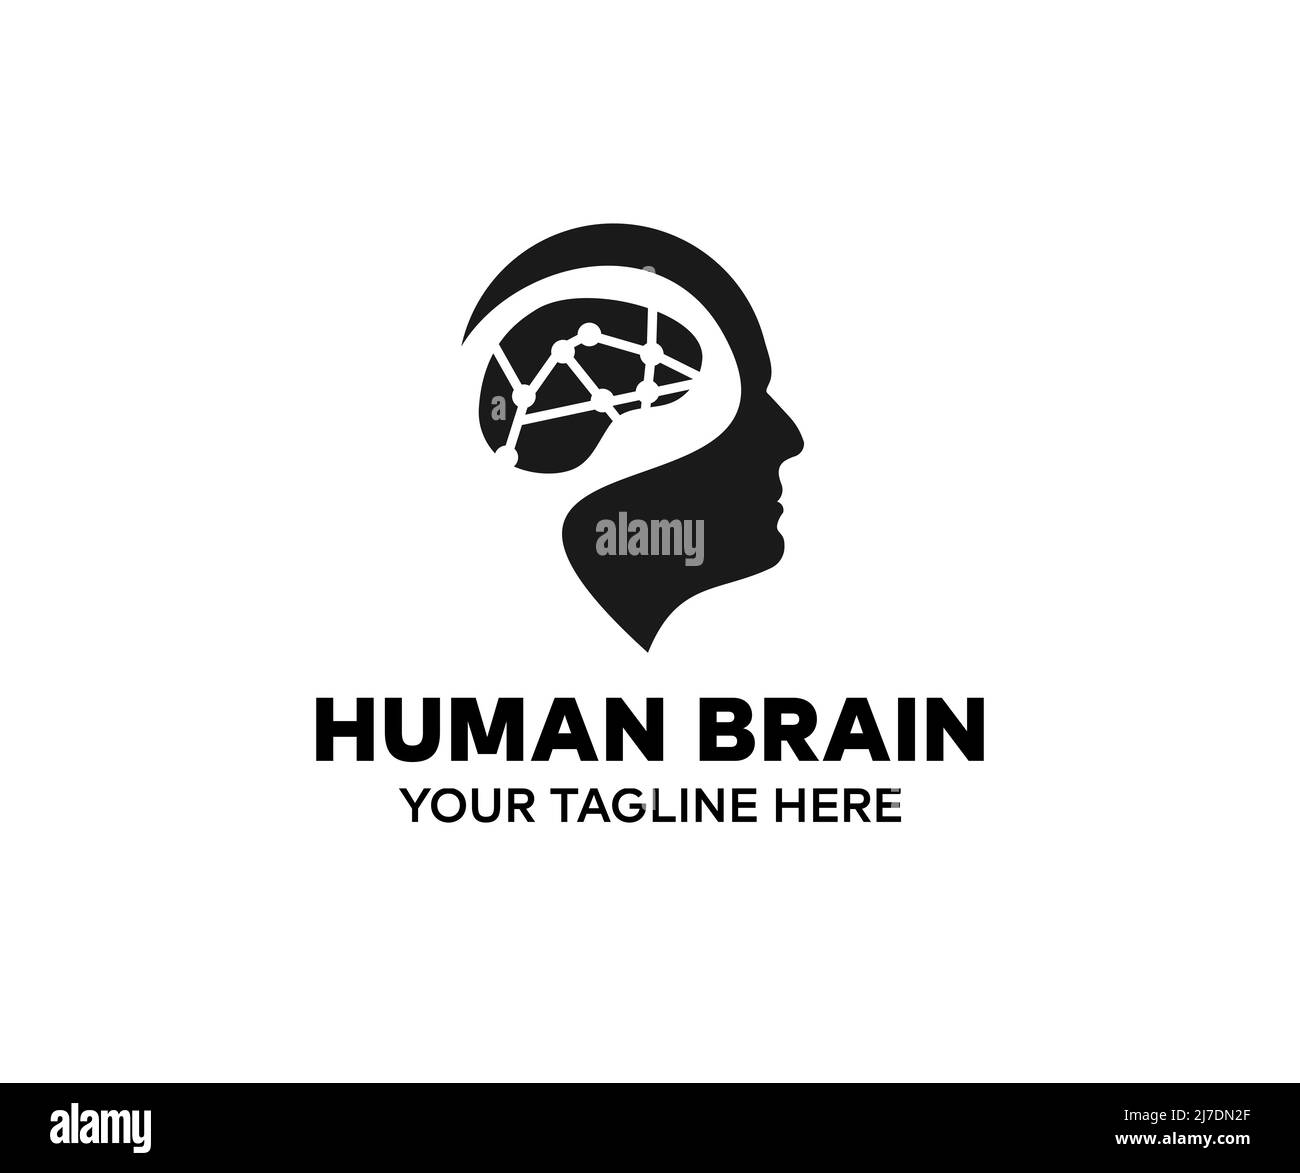 Cervello umano, anatomia, logo anatomico. Emisferi cerebrali, connessioni cerebrali esterne nel lobo frontale. Comunicazione, psicologia. Illustrazione Vettoriale